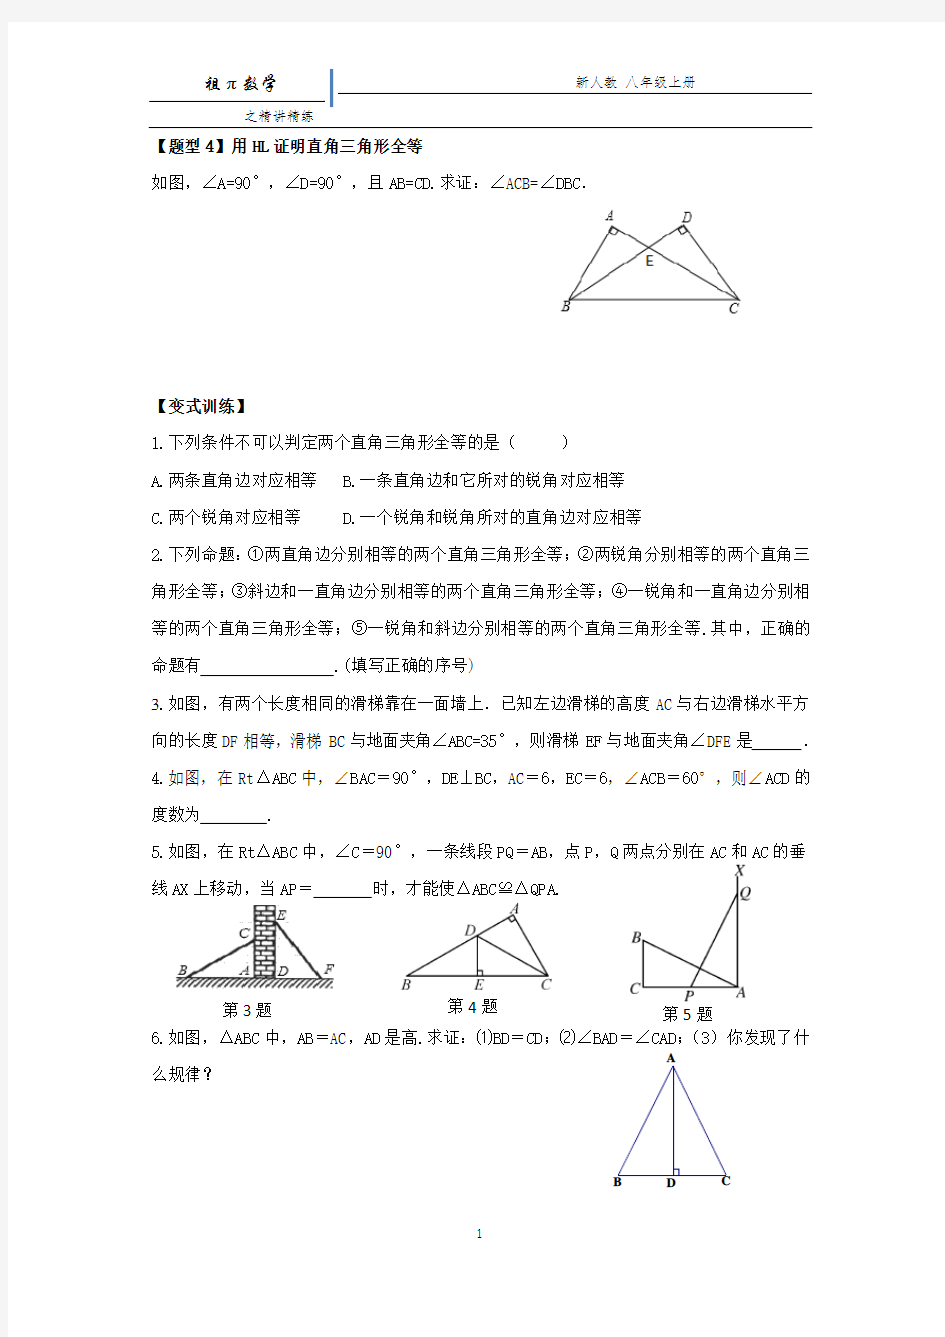 直角三角形的判定典型练习题汇编